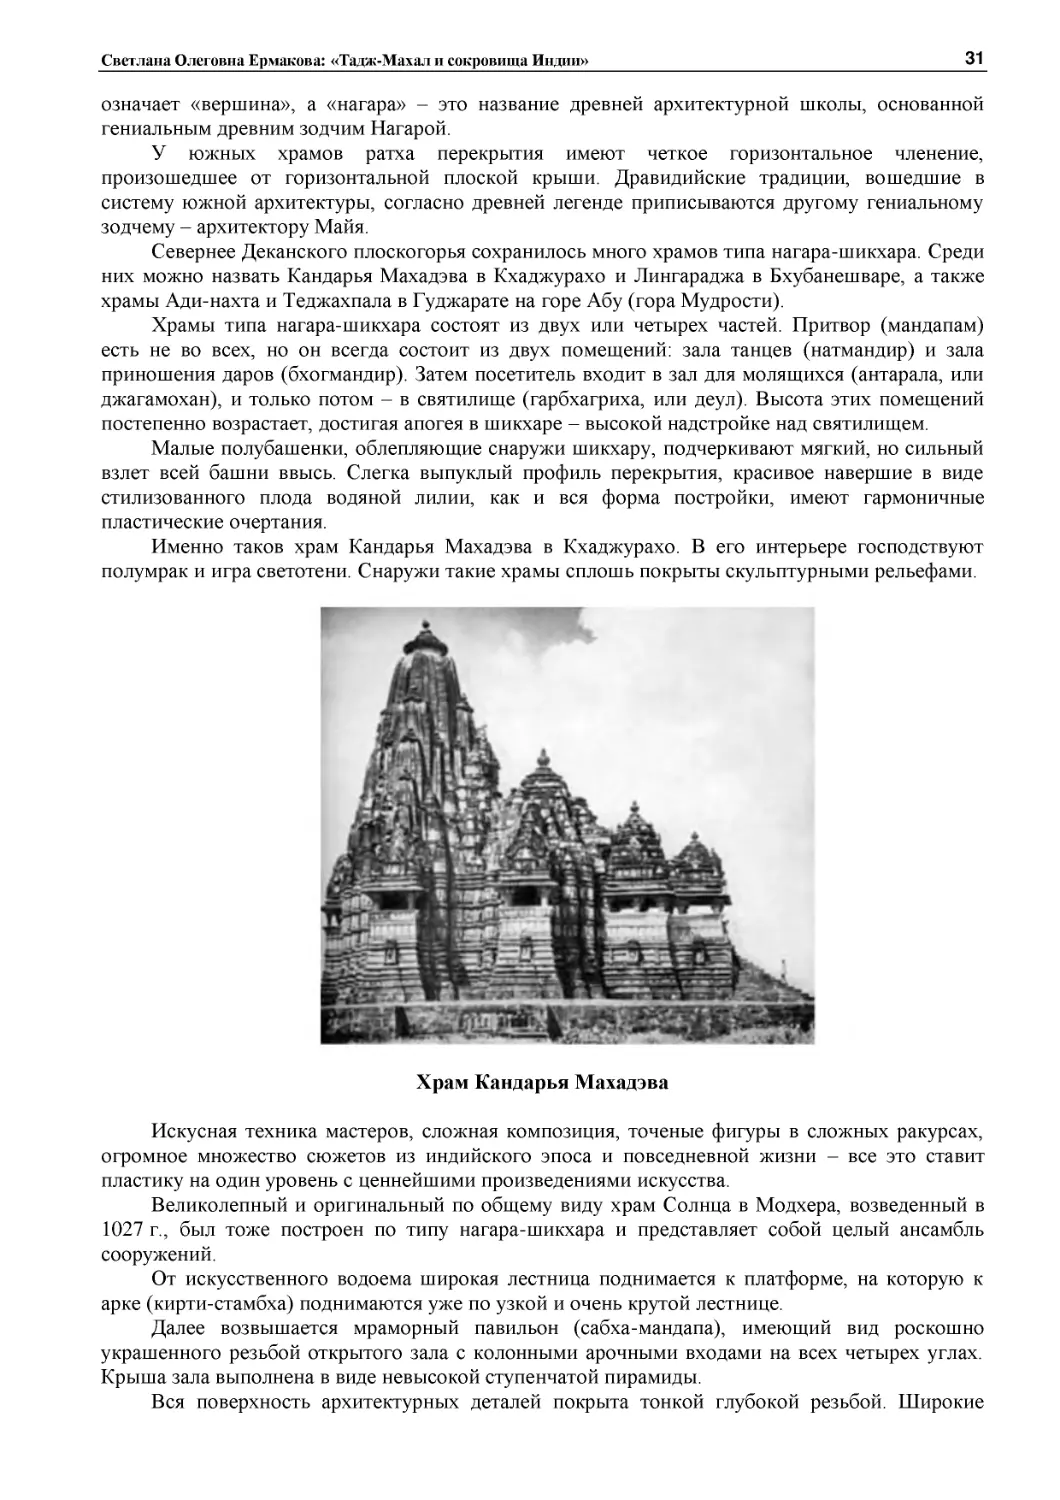 ﻿Храм Кандарья Махадэв